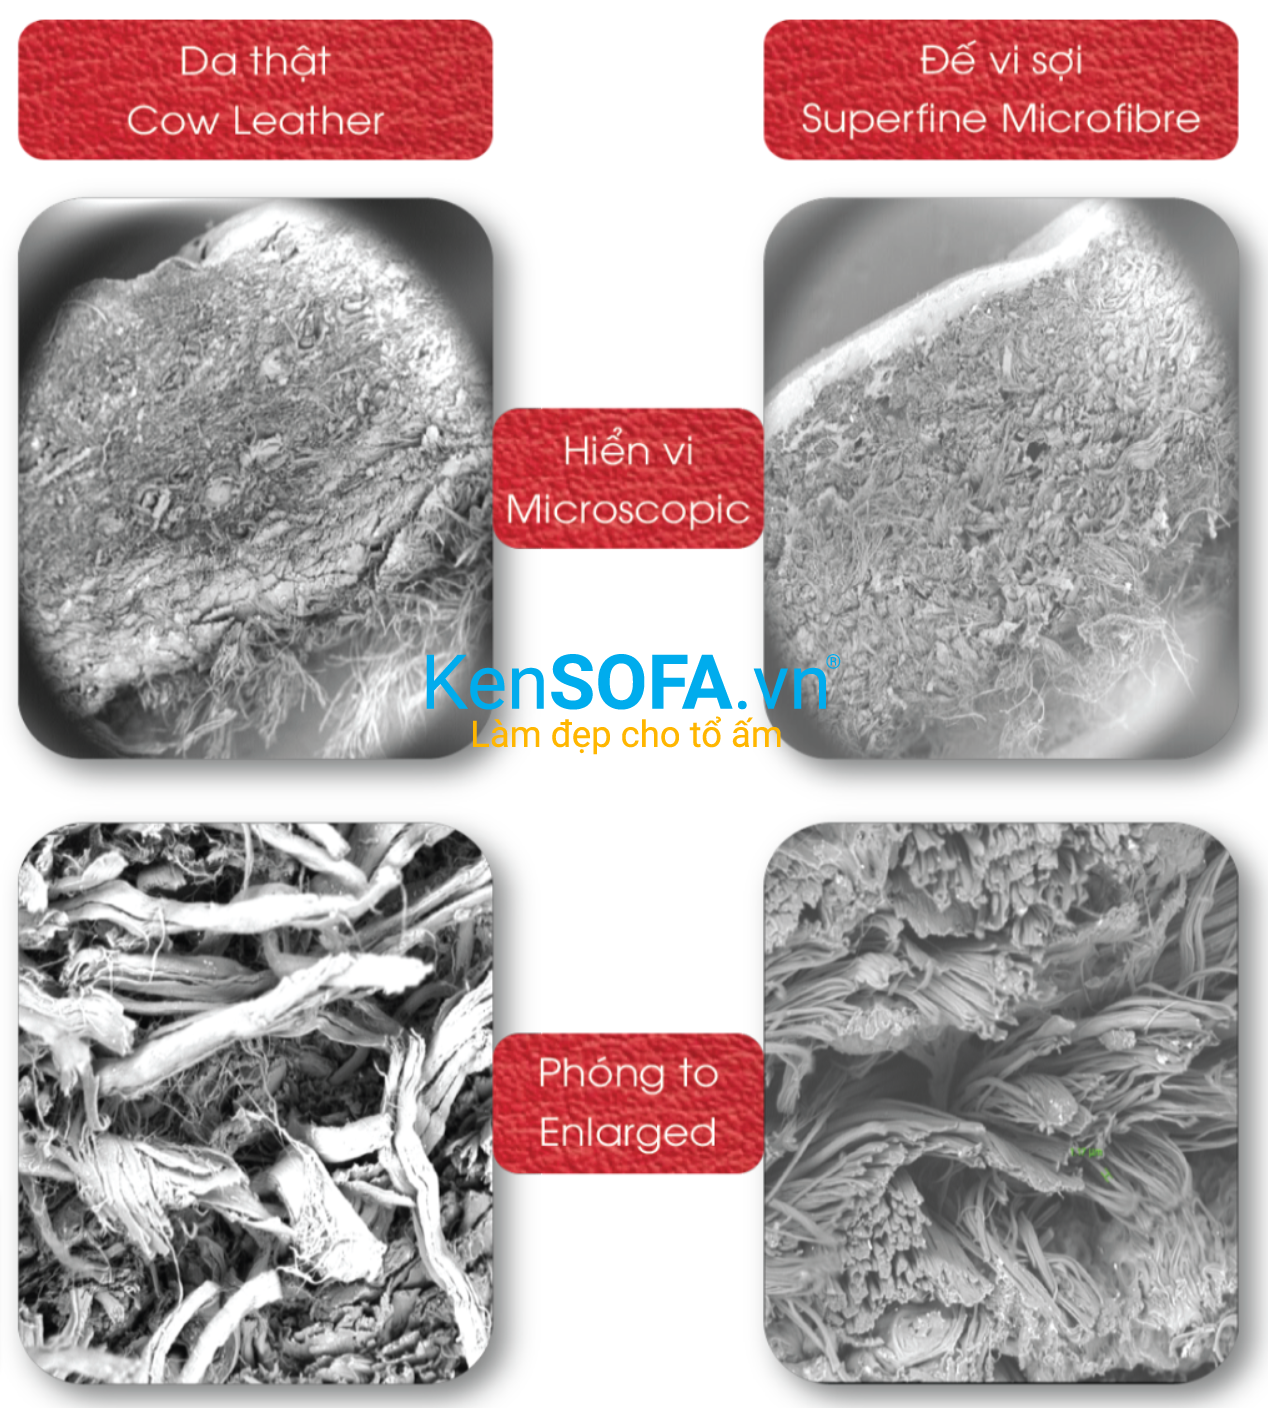 Da vi sợi Microfiber là sản phẩm da nhân tạo, chất lượng cao có cấu trúc gồm 2 thành phần chính: Đế vi sợi & bề mặt phủ PU tạo hoa văn.